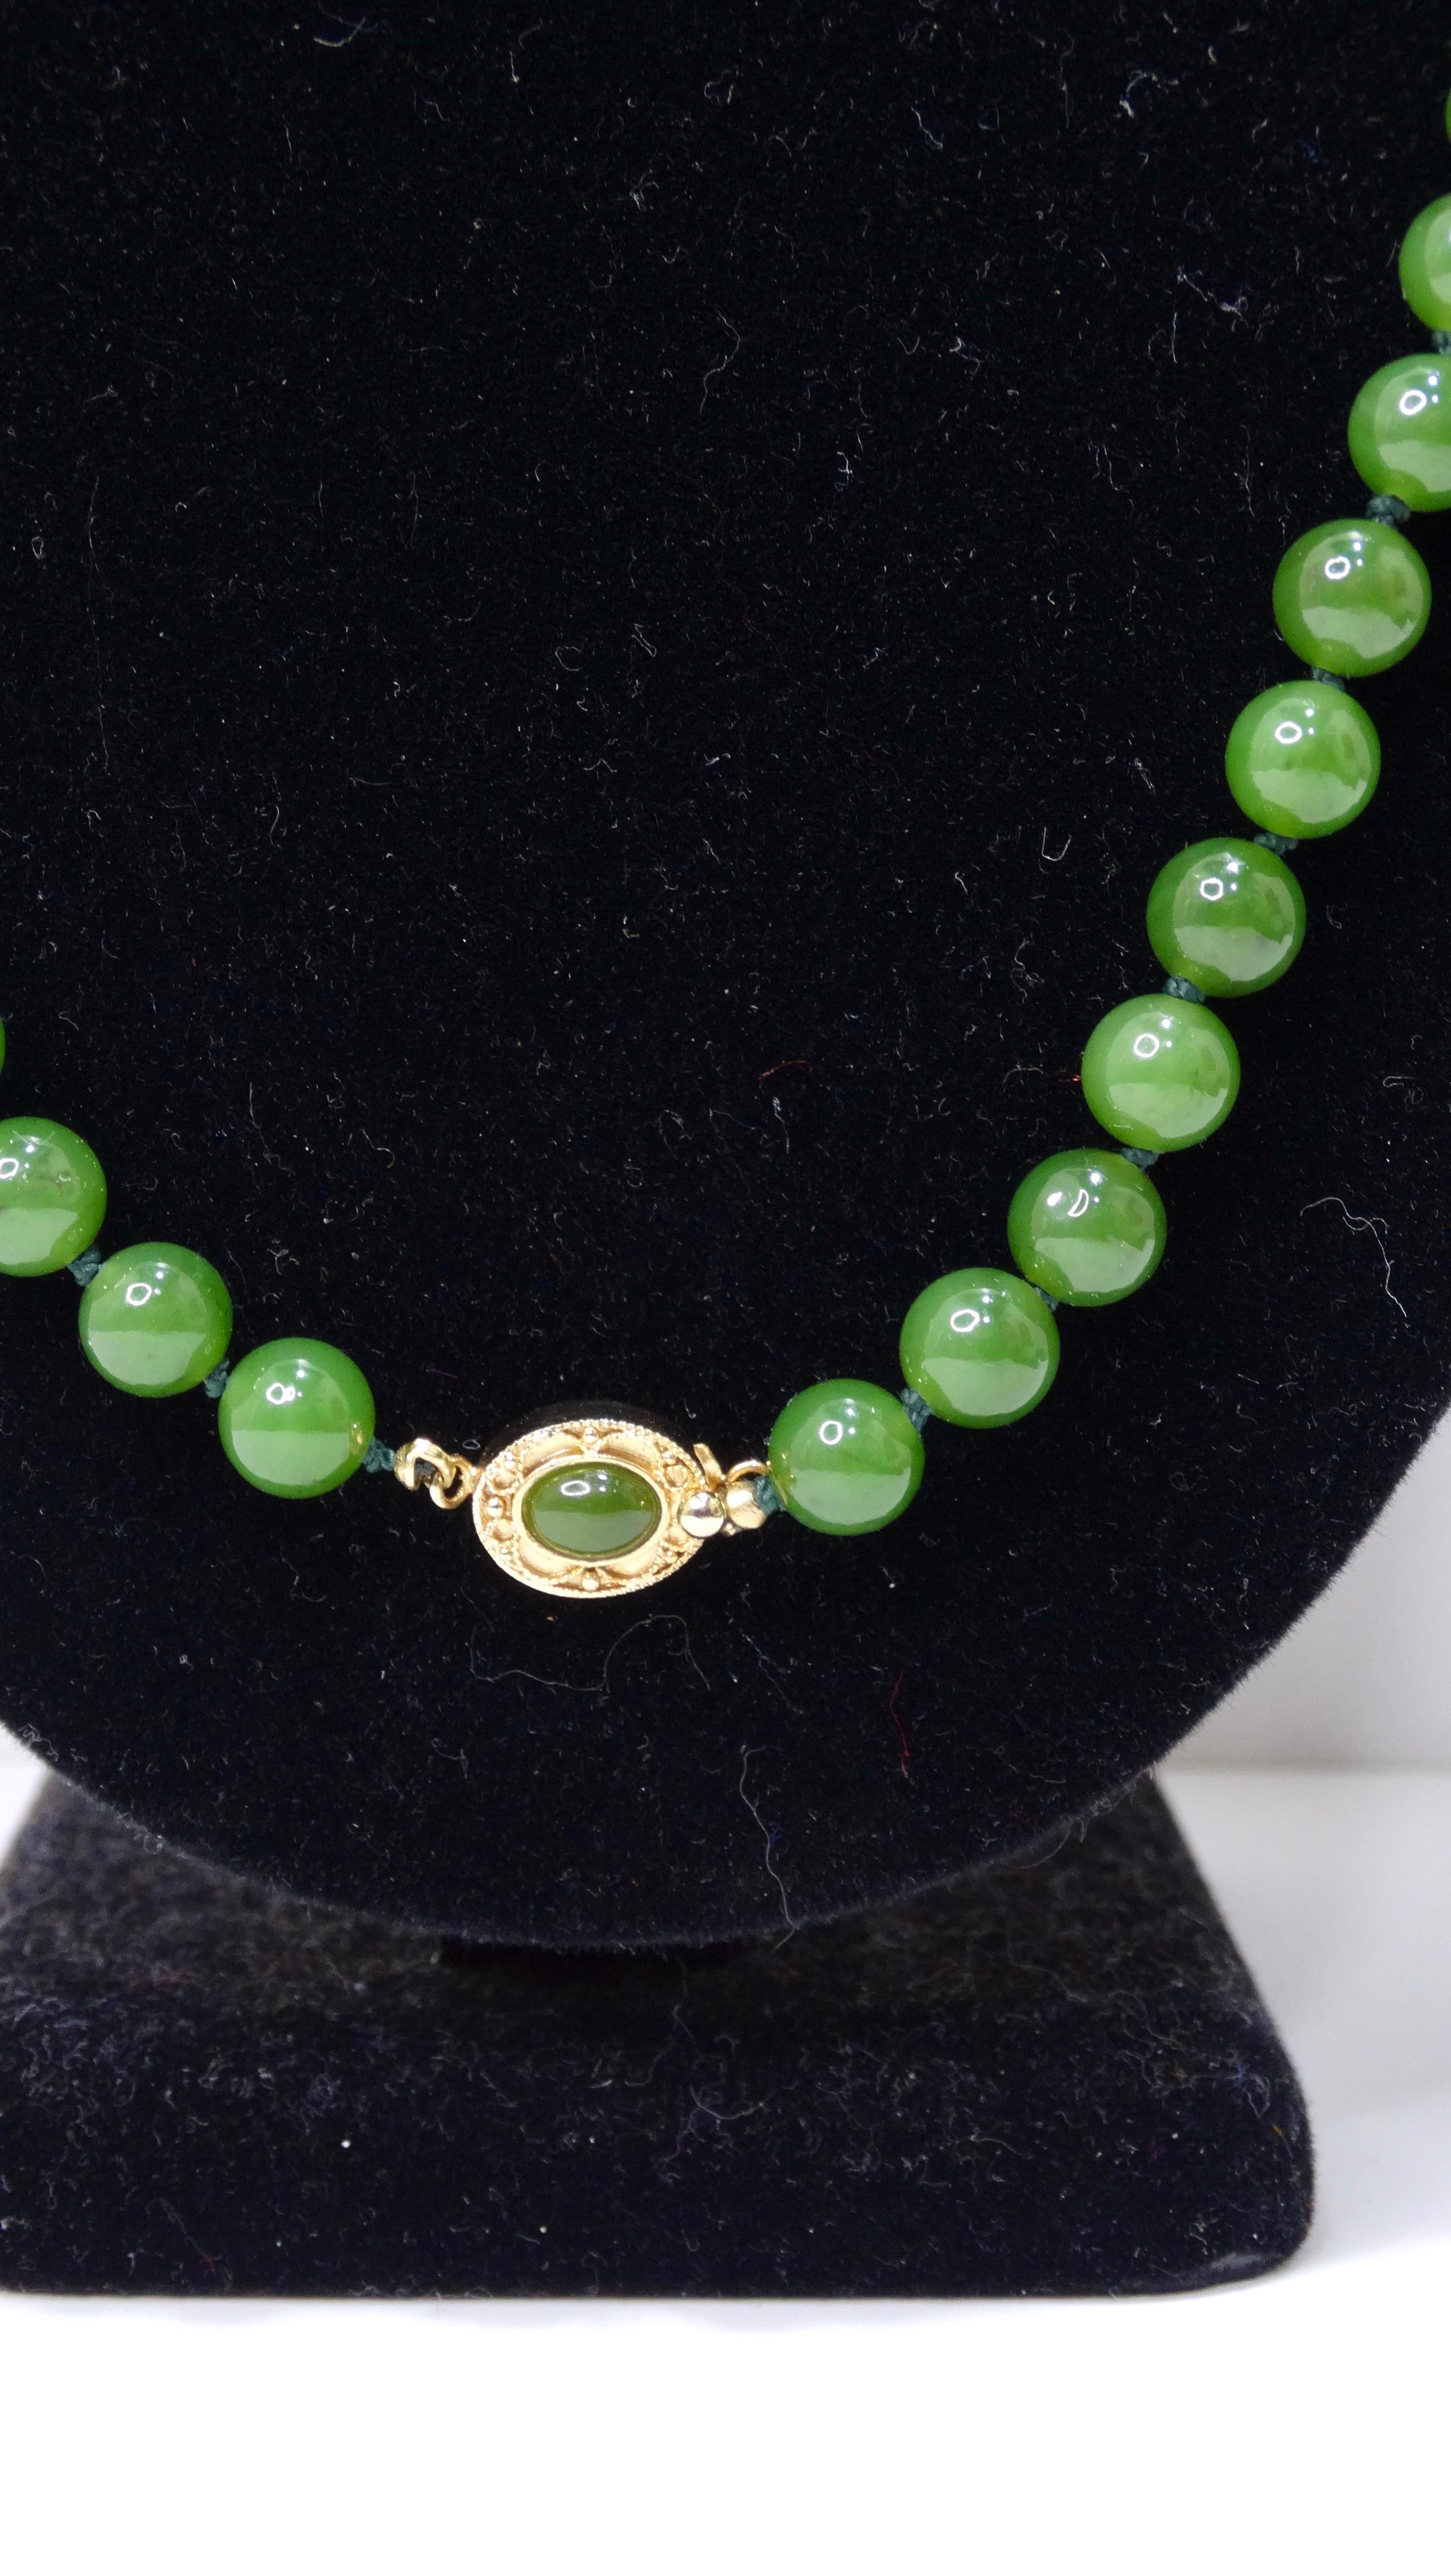 Erweitern Sie Ihre Schmucksammlung um eine wunderschöne Jadeperlenkette! Sie werden von der Schönheit der leuchtend grünen Perlen beeindruckt sein. Die Kette ist vollständig mit Perlen besetzt und hat in der Mitte einen Anhänger aus Gold und Jade.